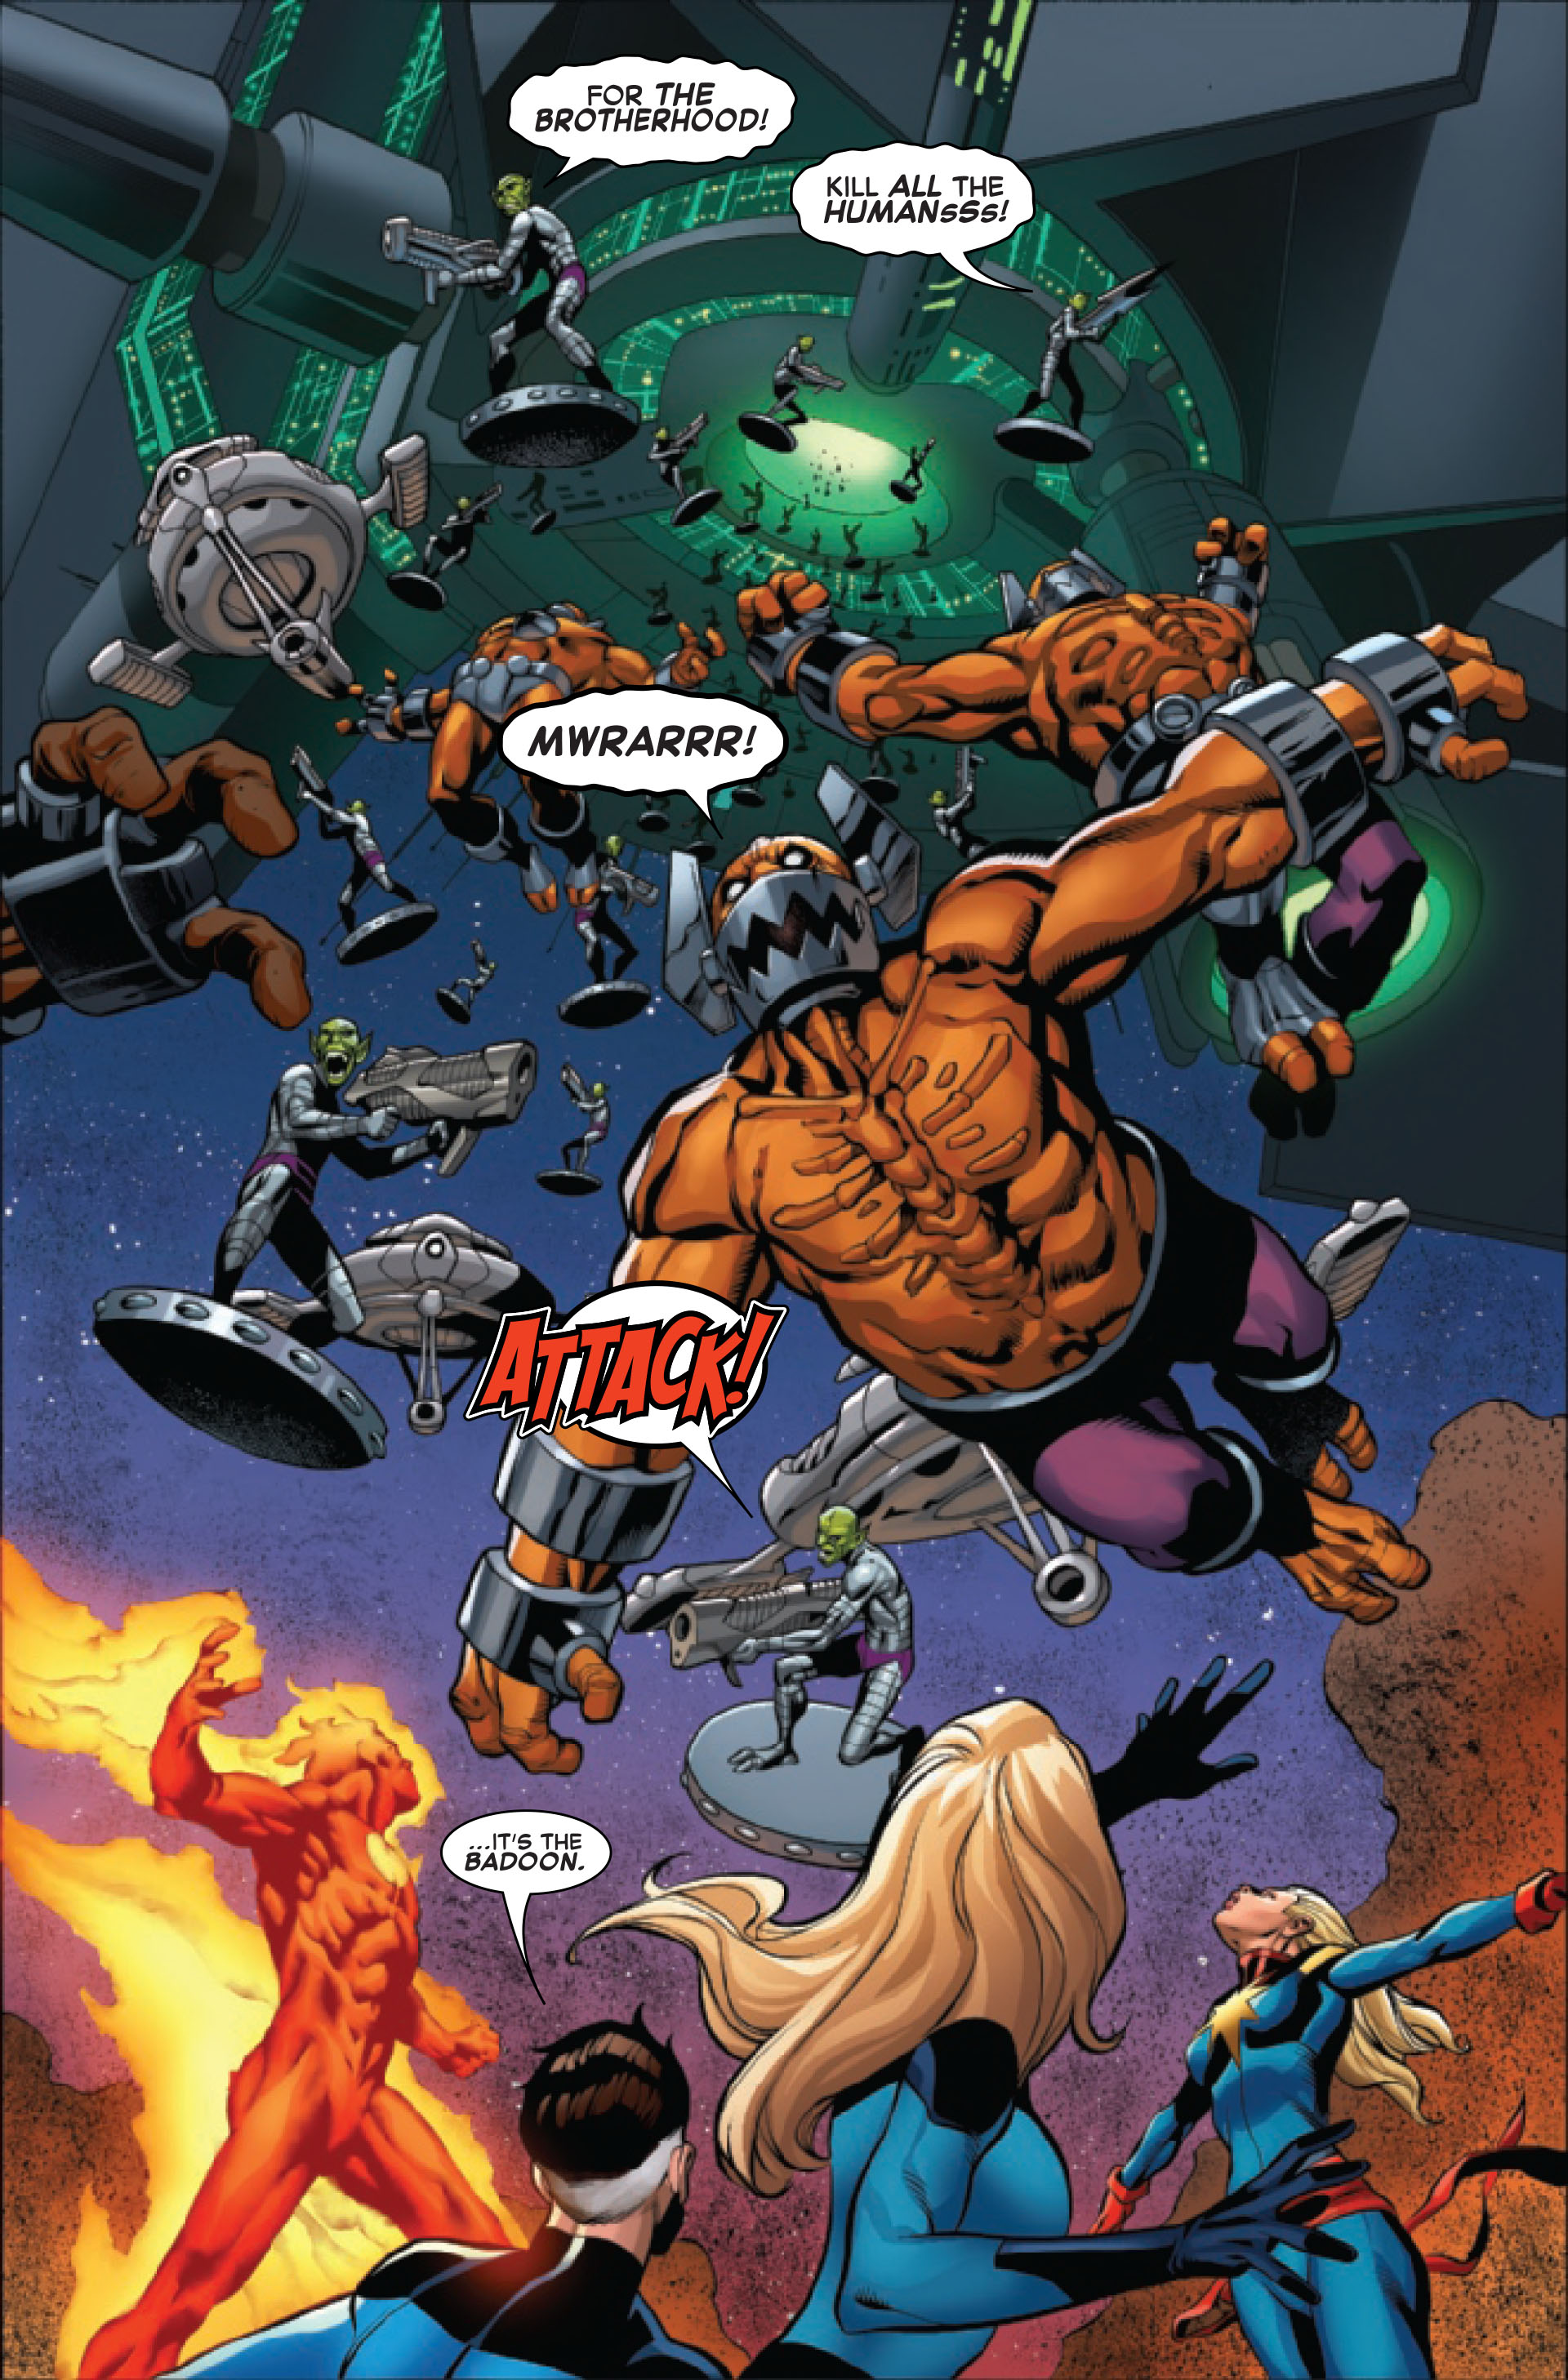 Fantastic Four: The Reckoning War Alpha Nr. 1